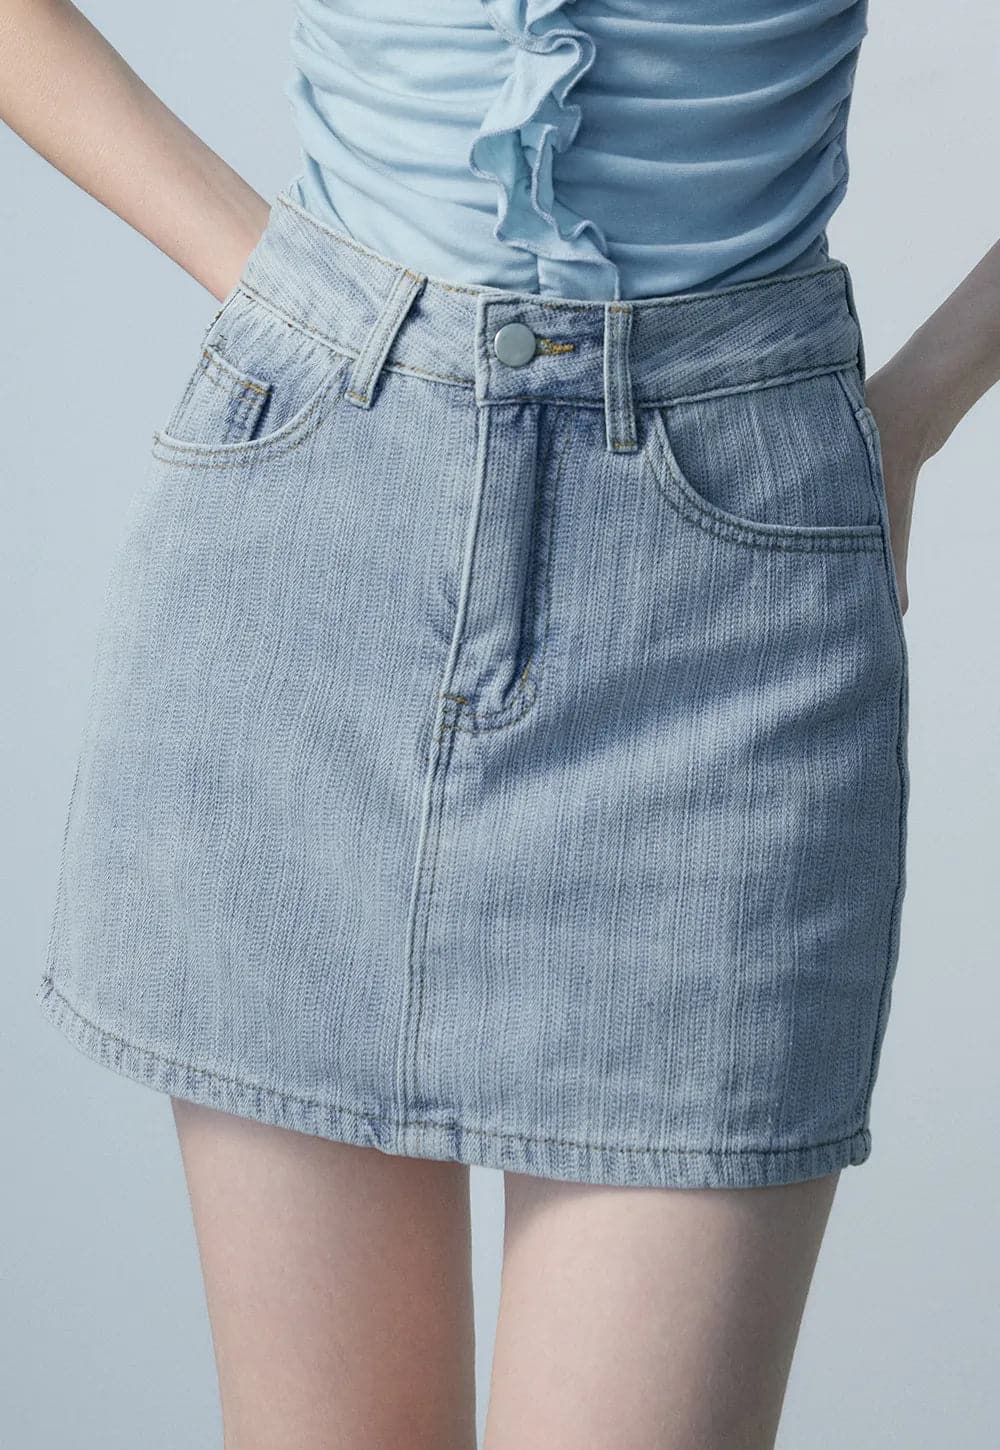 Classic Denim Mini Skirt - Timeless Wardrobe Staple